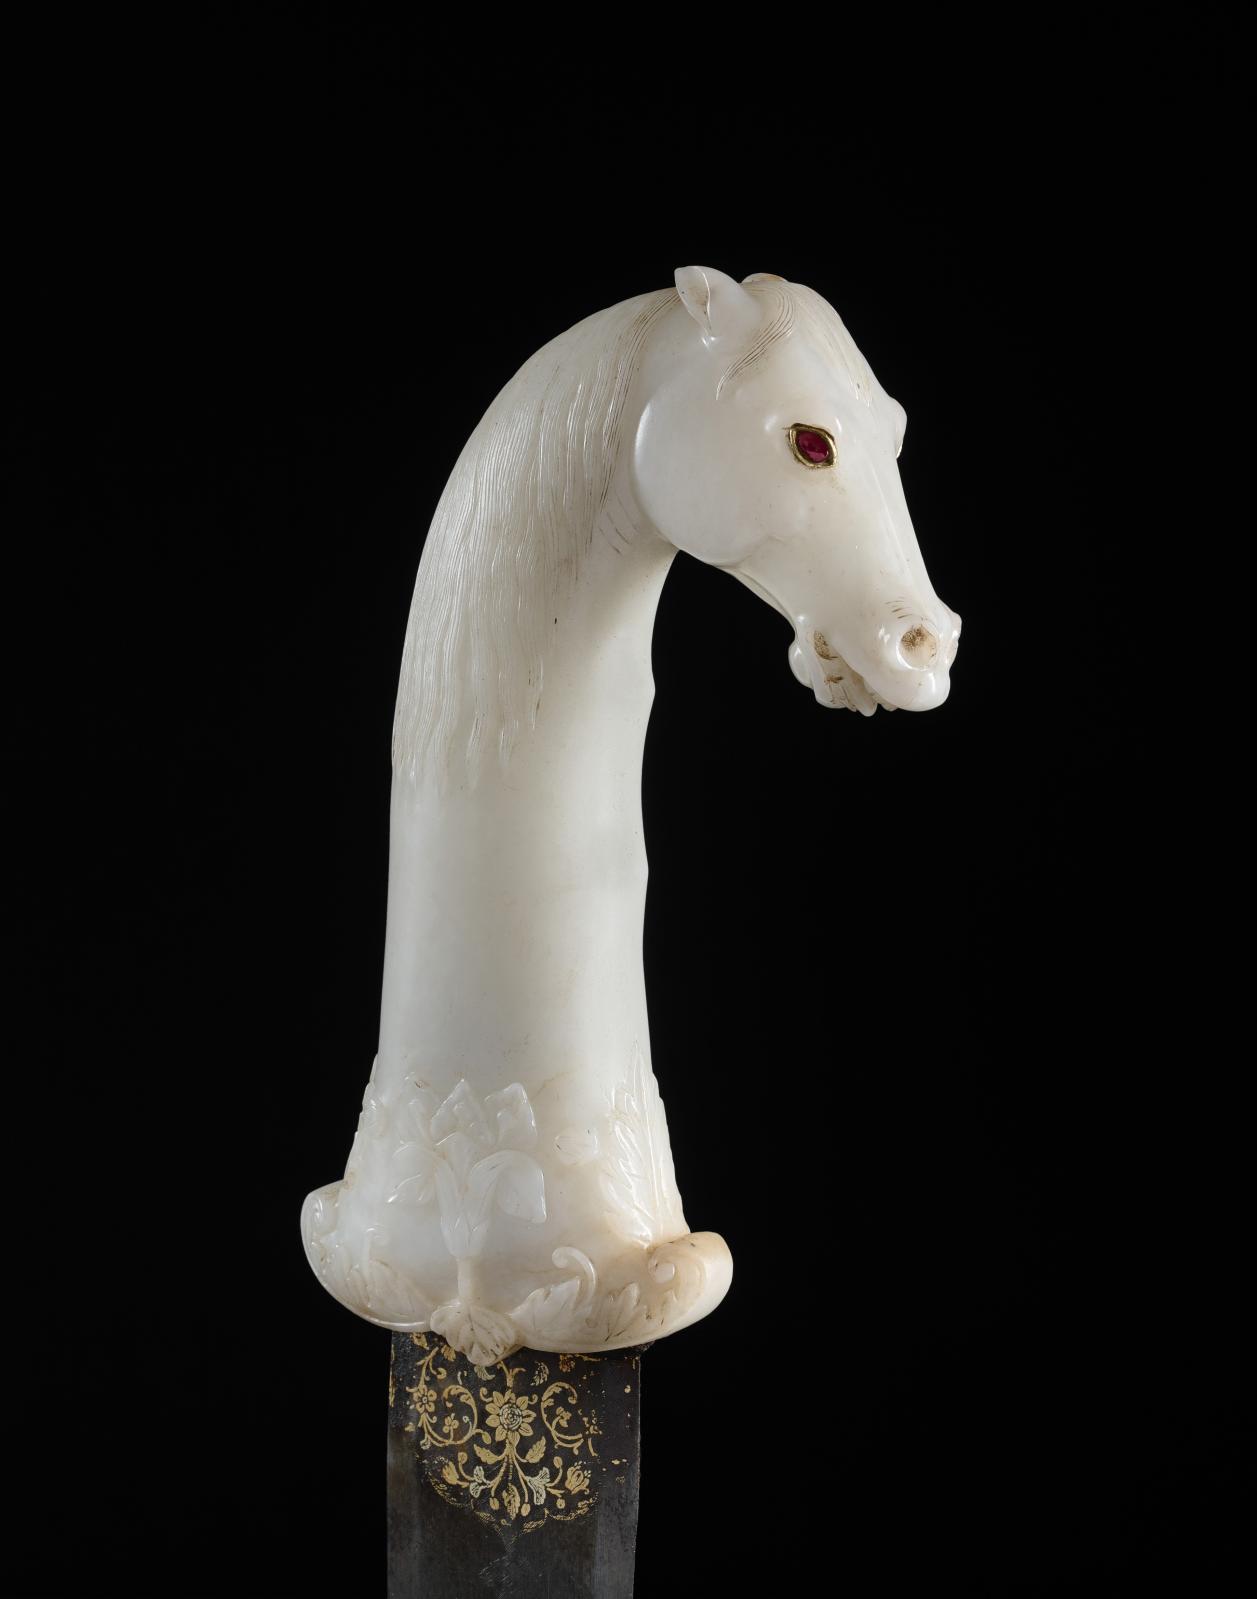 Inde, XVIIe siècle, époque moghole. Khanjar à tête de cheval, lame en acier damasquiné d’or blanc et rose, poignée en jade blanc, yeux en rubis montés